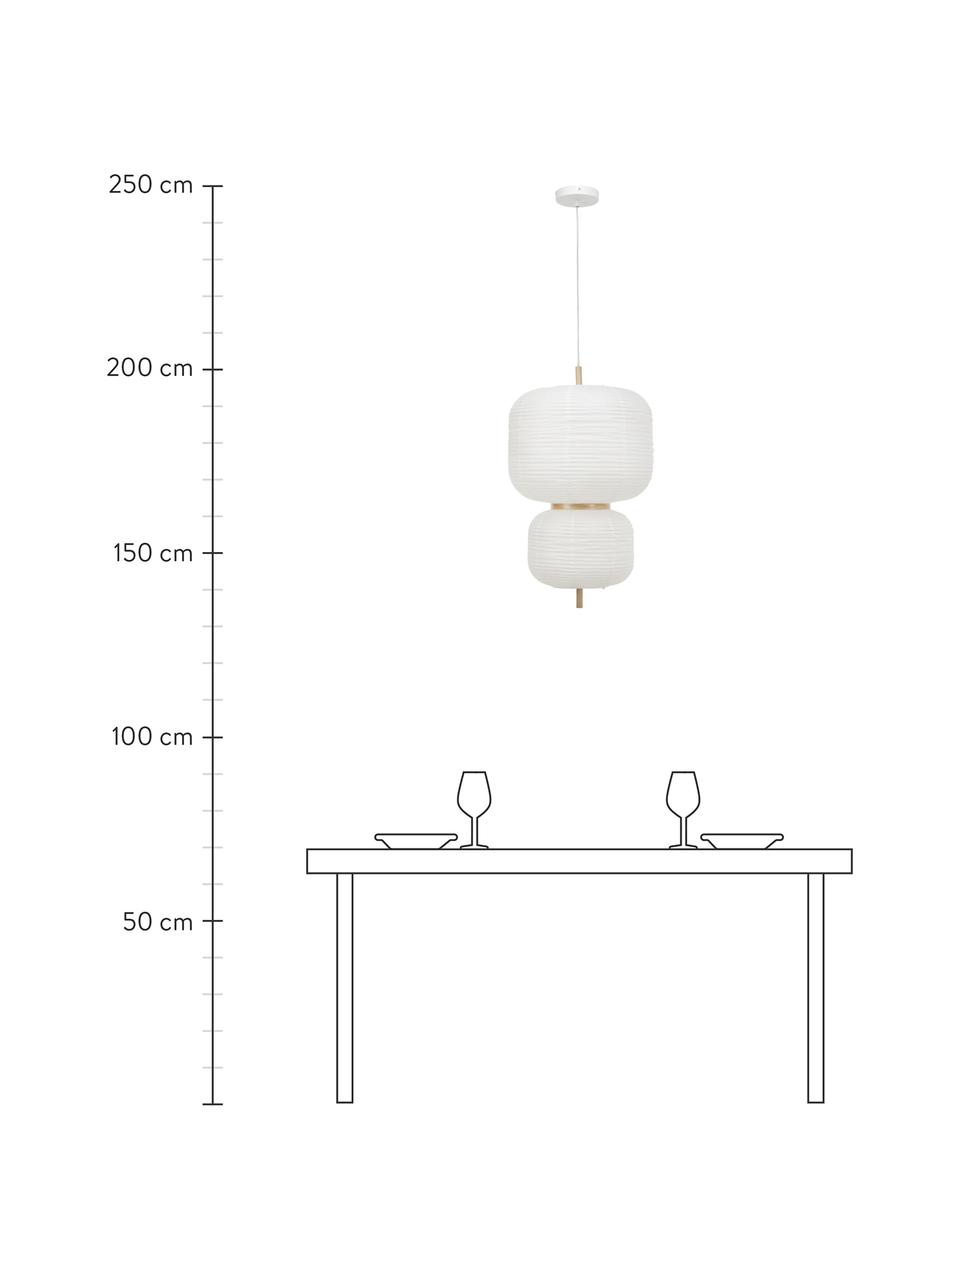 Lámpara de techo de diseño Misaki, Pantalla: papel de arroz, Anclaje: metal con pintura en polv, Cable: plástico, Blanco, Ø 40 x Al 70 cm